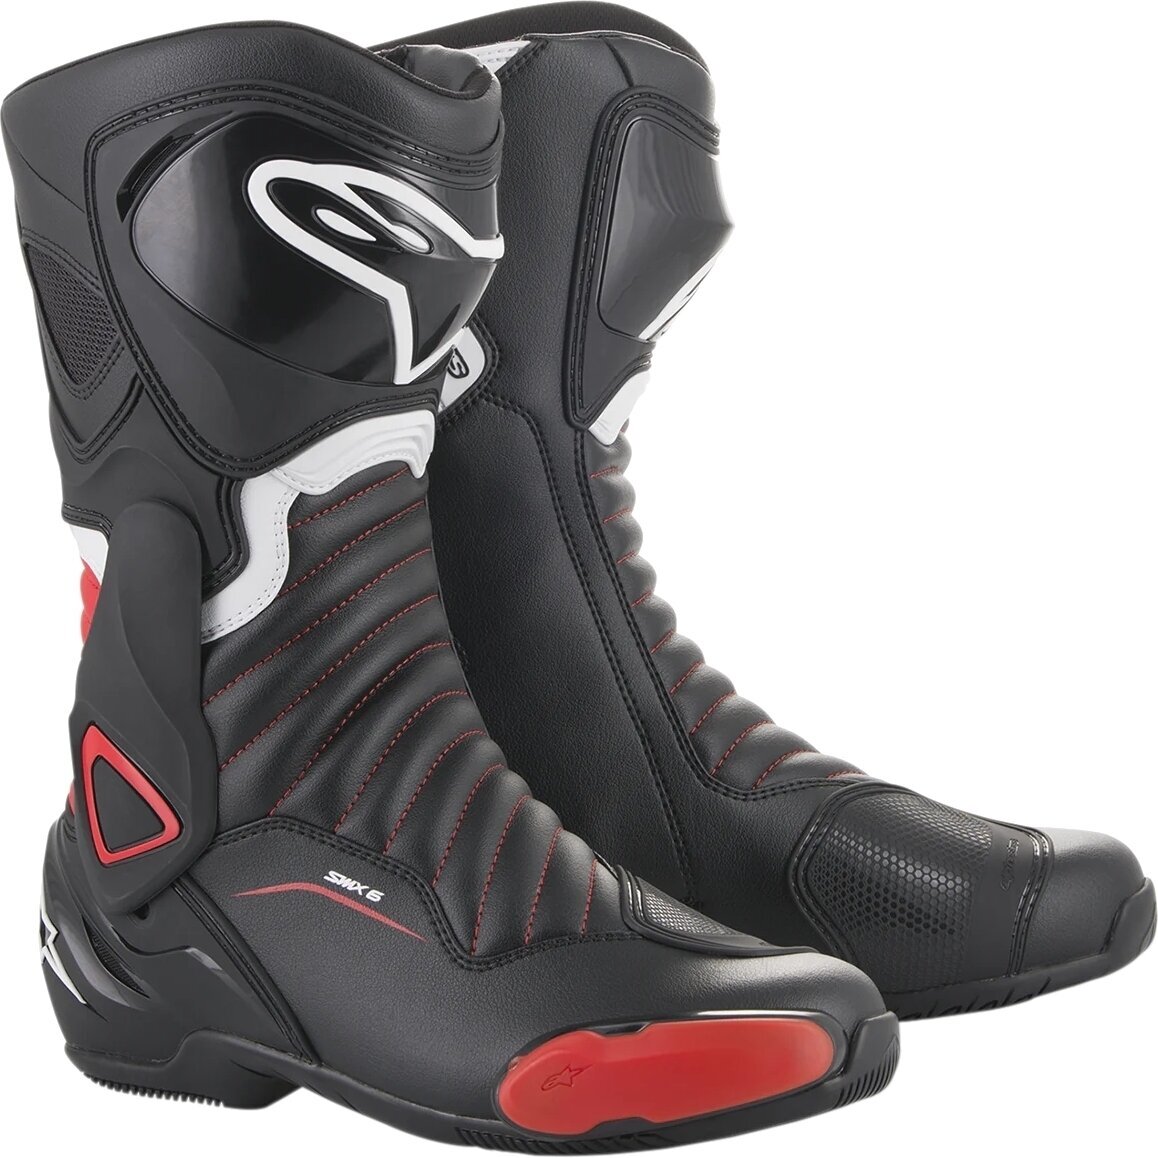 Boty Alpinestars SMX-6 V2 Boots Black/Gray/Red Fluo 36 Boty